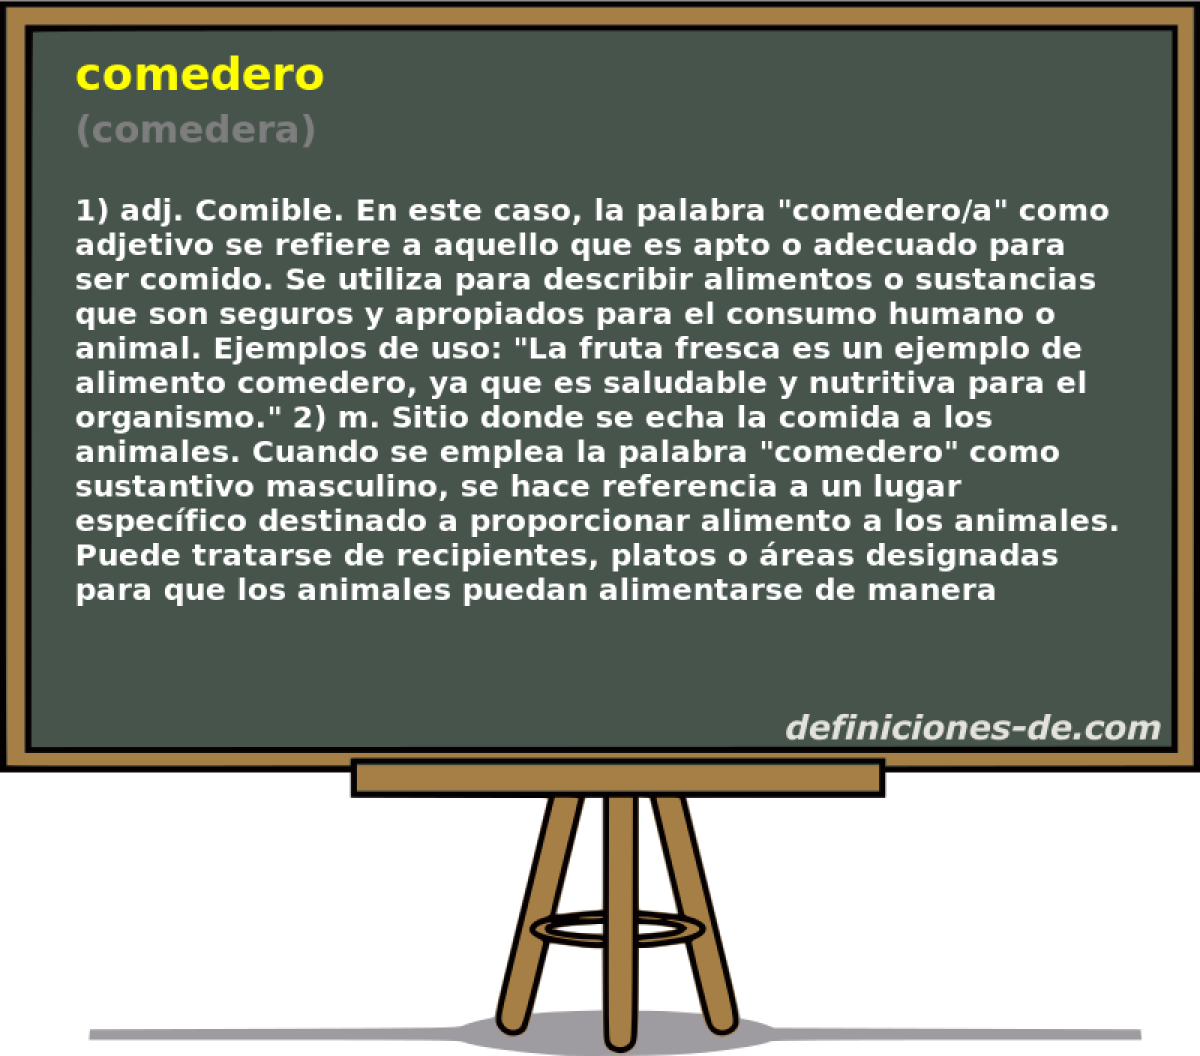 comedero (comedera)